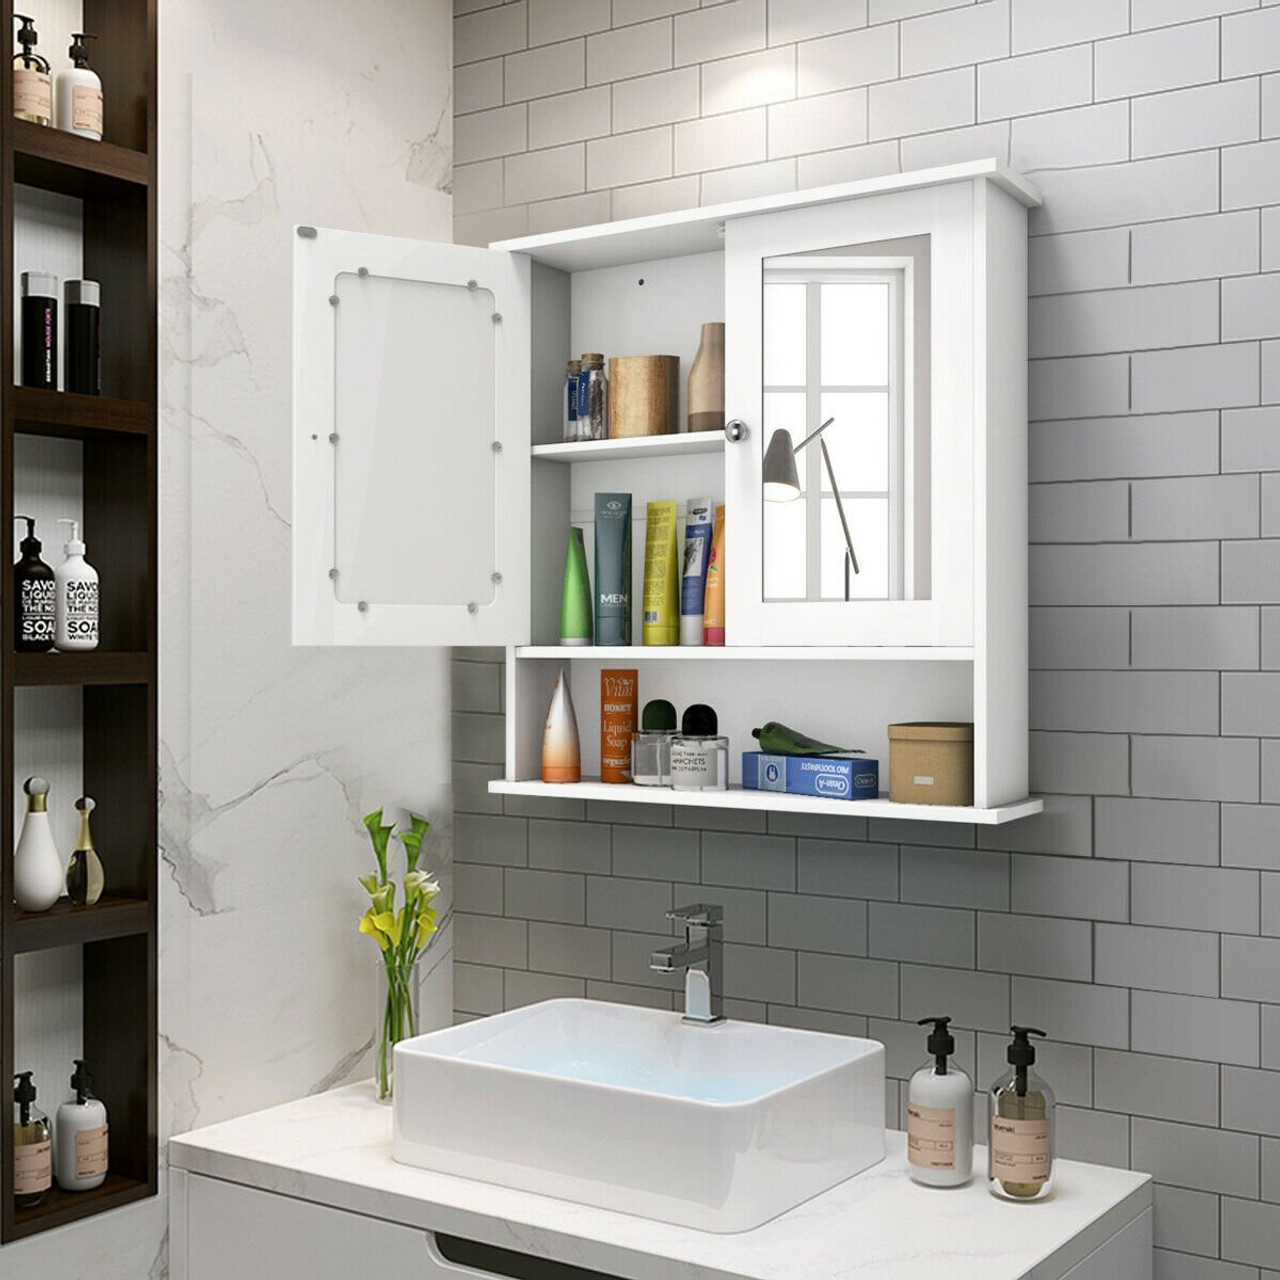 Details about   Bathroom Bath Cabinet Wall Mount Storage Organizer Rack w/ Mirrors Door 